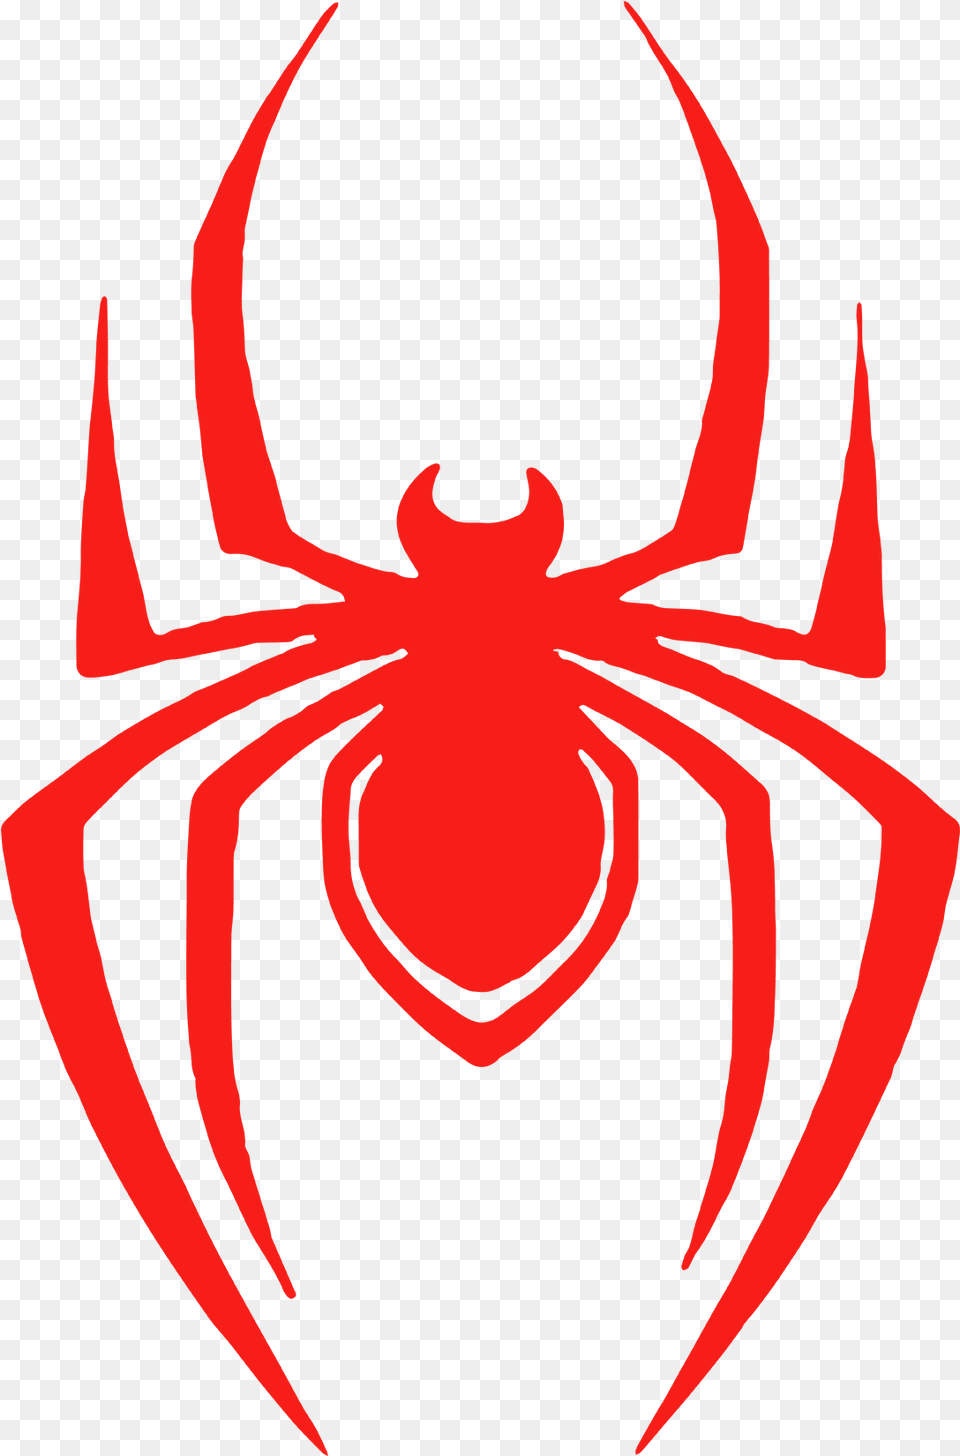 Miles Morales Spider Emblem Spider Man Logo, Person, Animal, Invertebrate Free Transparent Png